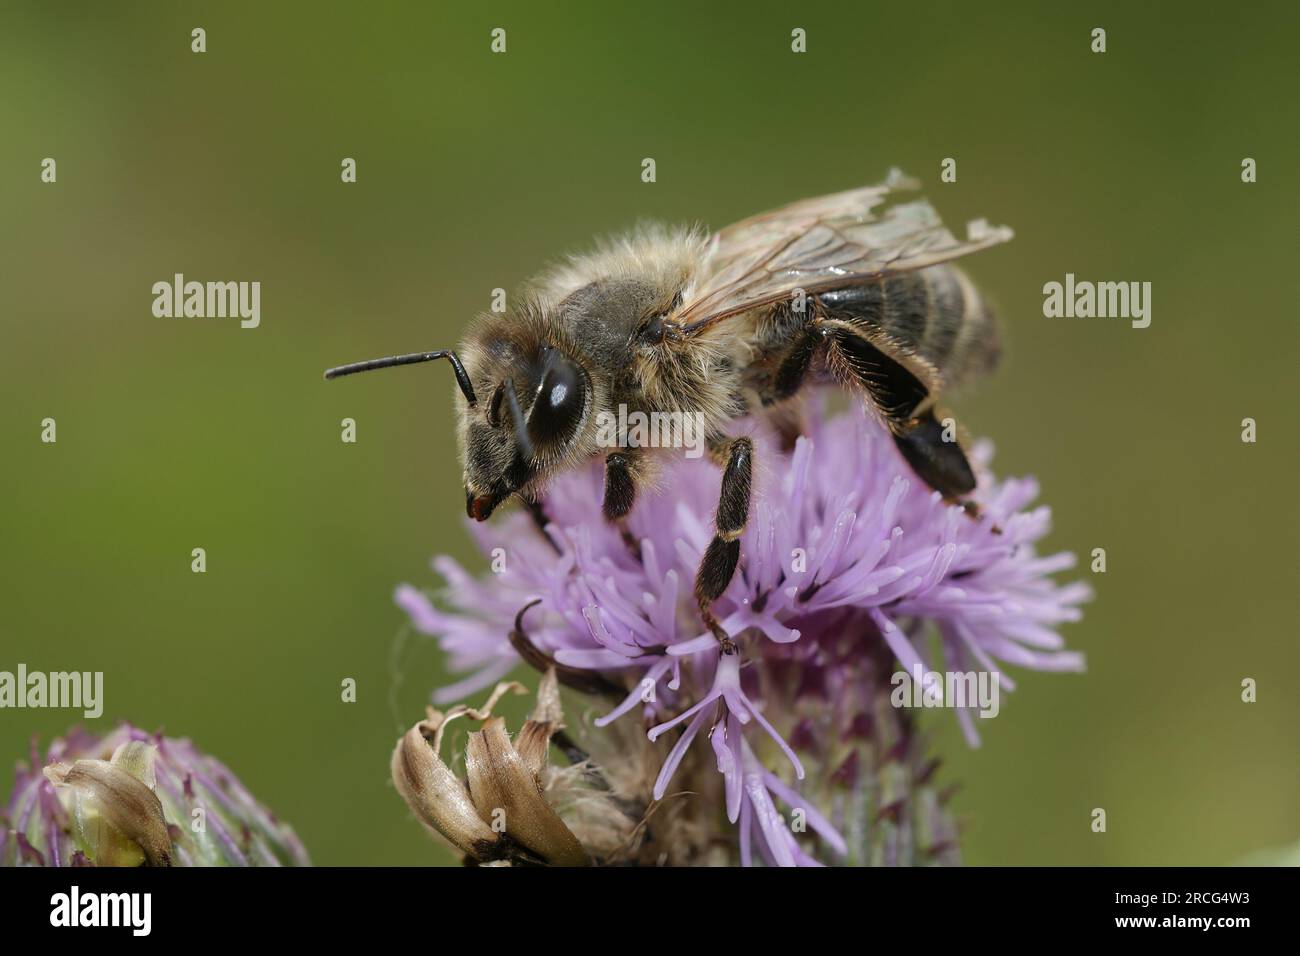 Gros plan coloré naturel sur un ouvrier poilu d'abeille, Apis mellifera assis sur une fleur violette Banque D'Images